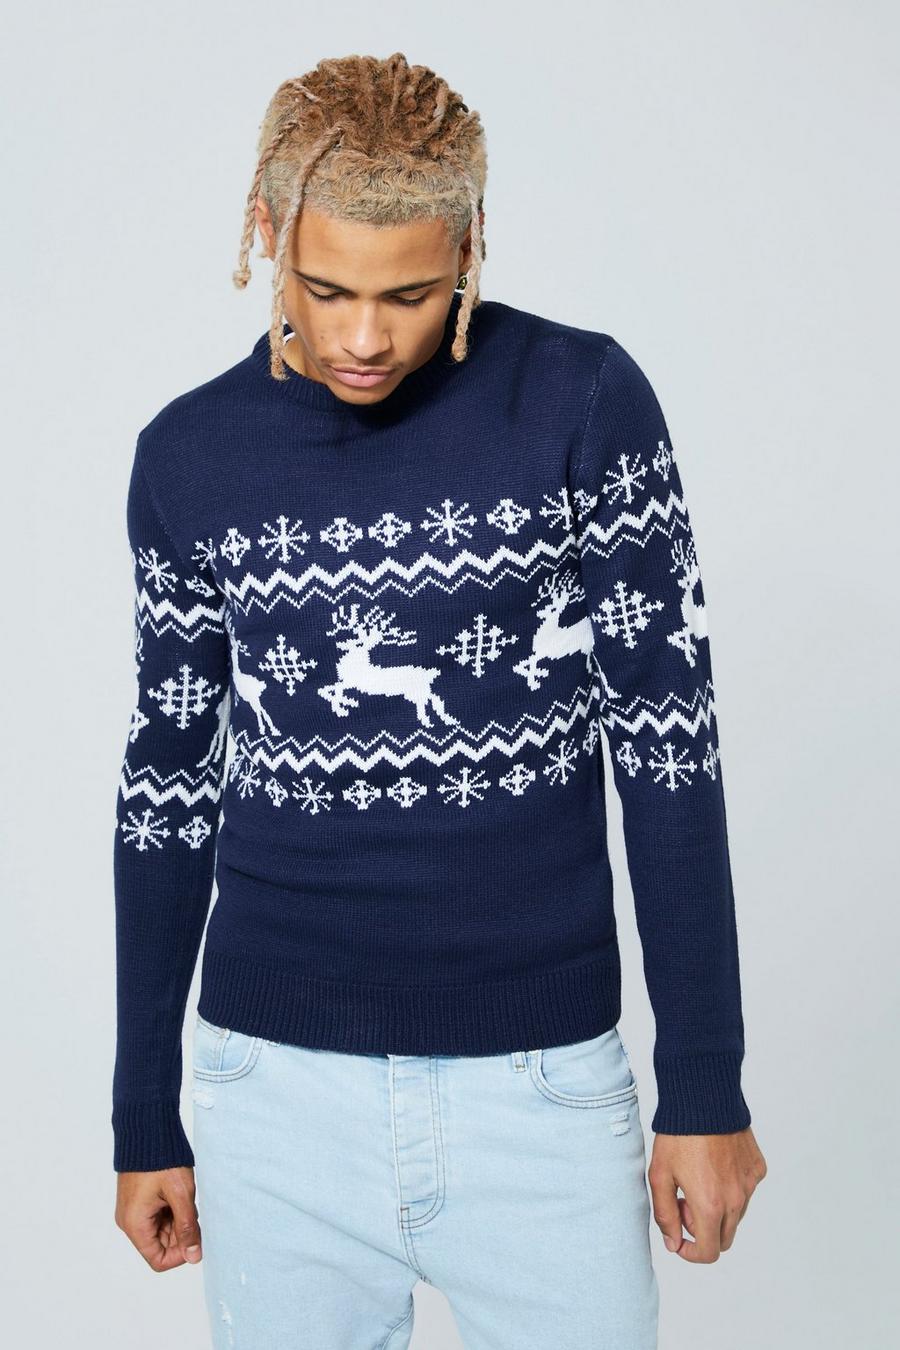 נייבי blu oltremare סוודר לחג המולד עם פאנל אייל הצפון בסגנון פייר אייל, לגברים גבוהים